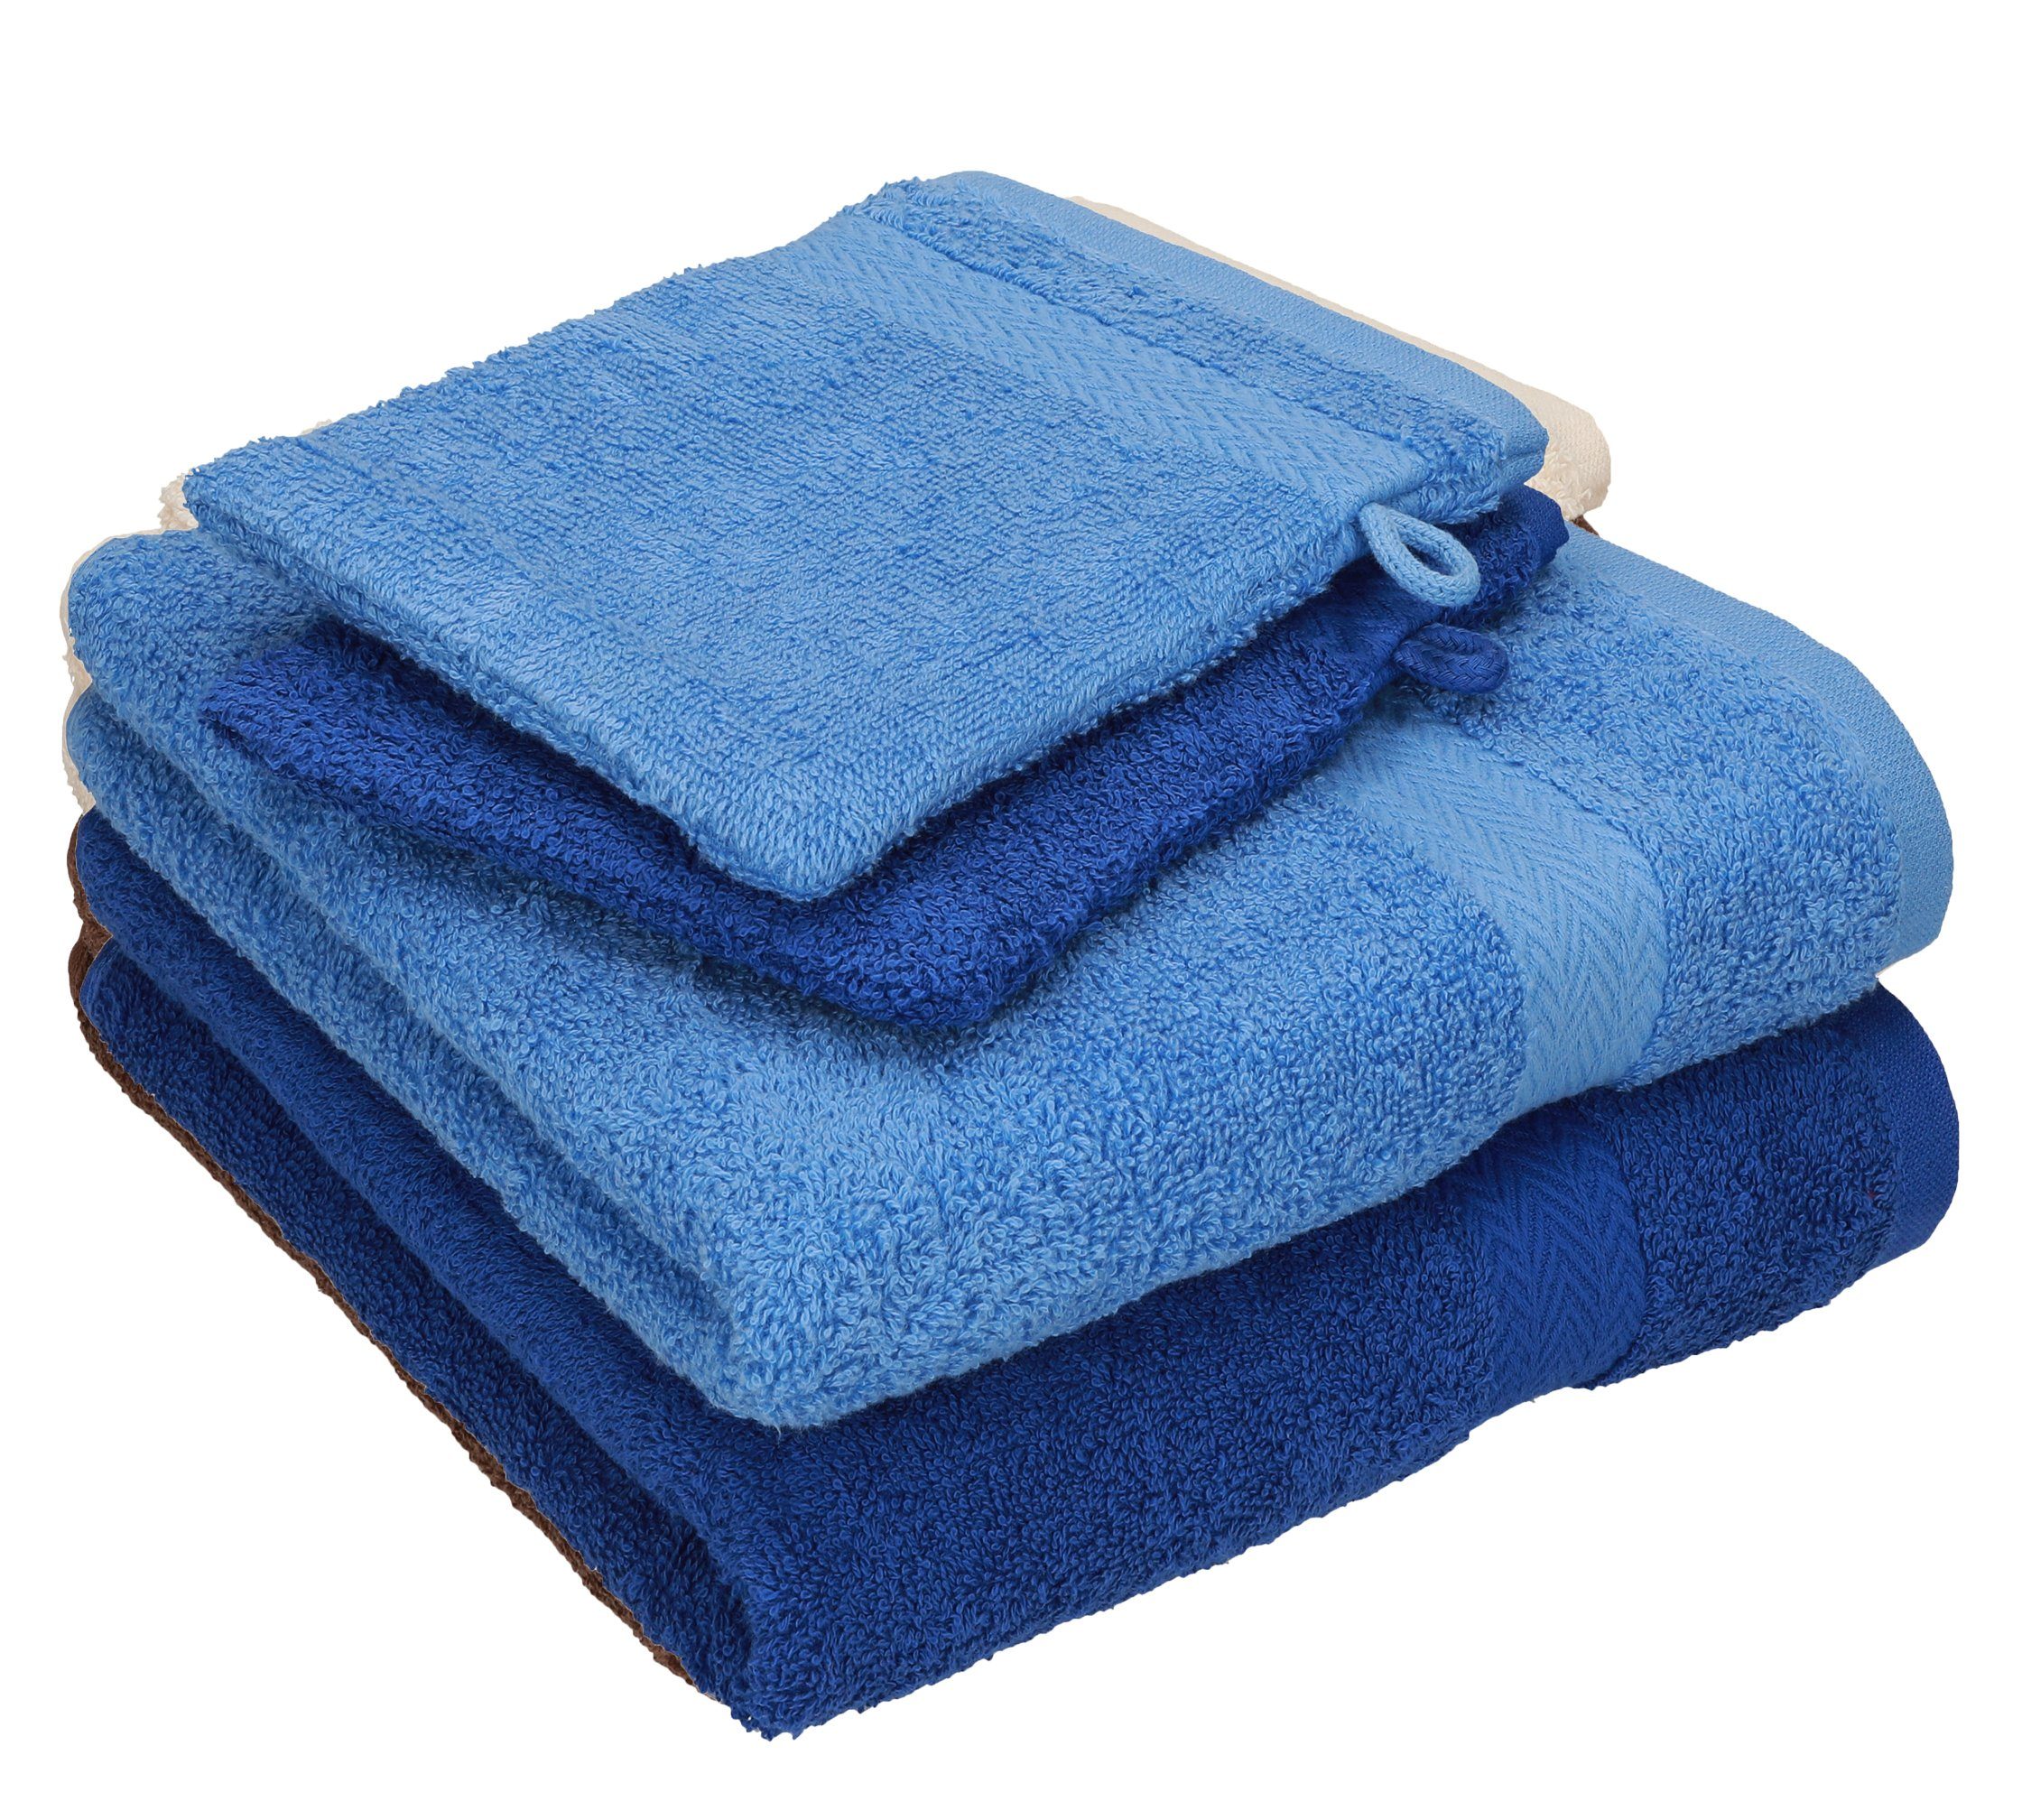 Betz Handtuch Set 4 TLG. Handtuch Set Happy Pack 100% Baumwolle 2 Handtücher 2 Waschhandschuhe, 100% Baumwolle, (4-tlg) royalblau-hellblau | Handtuch-Sets